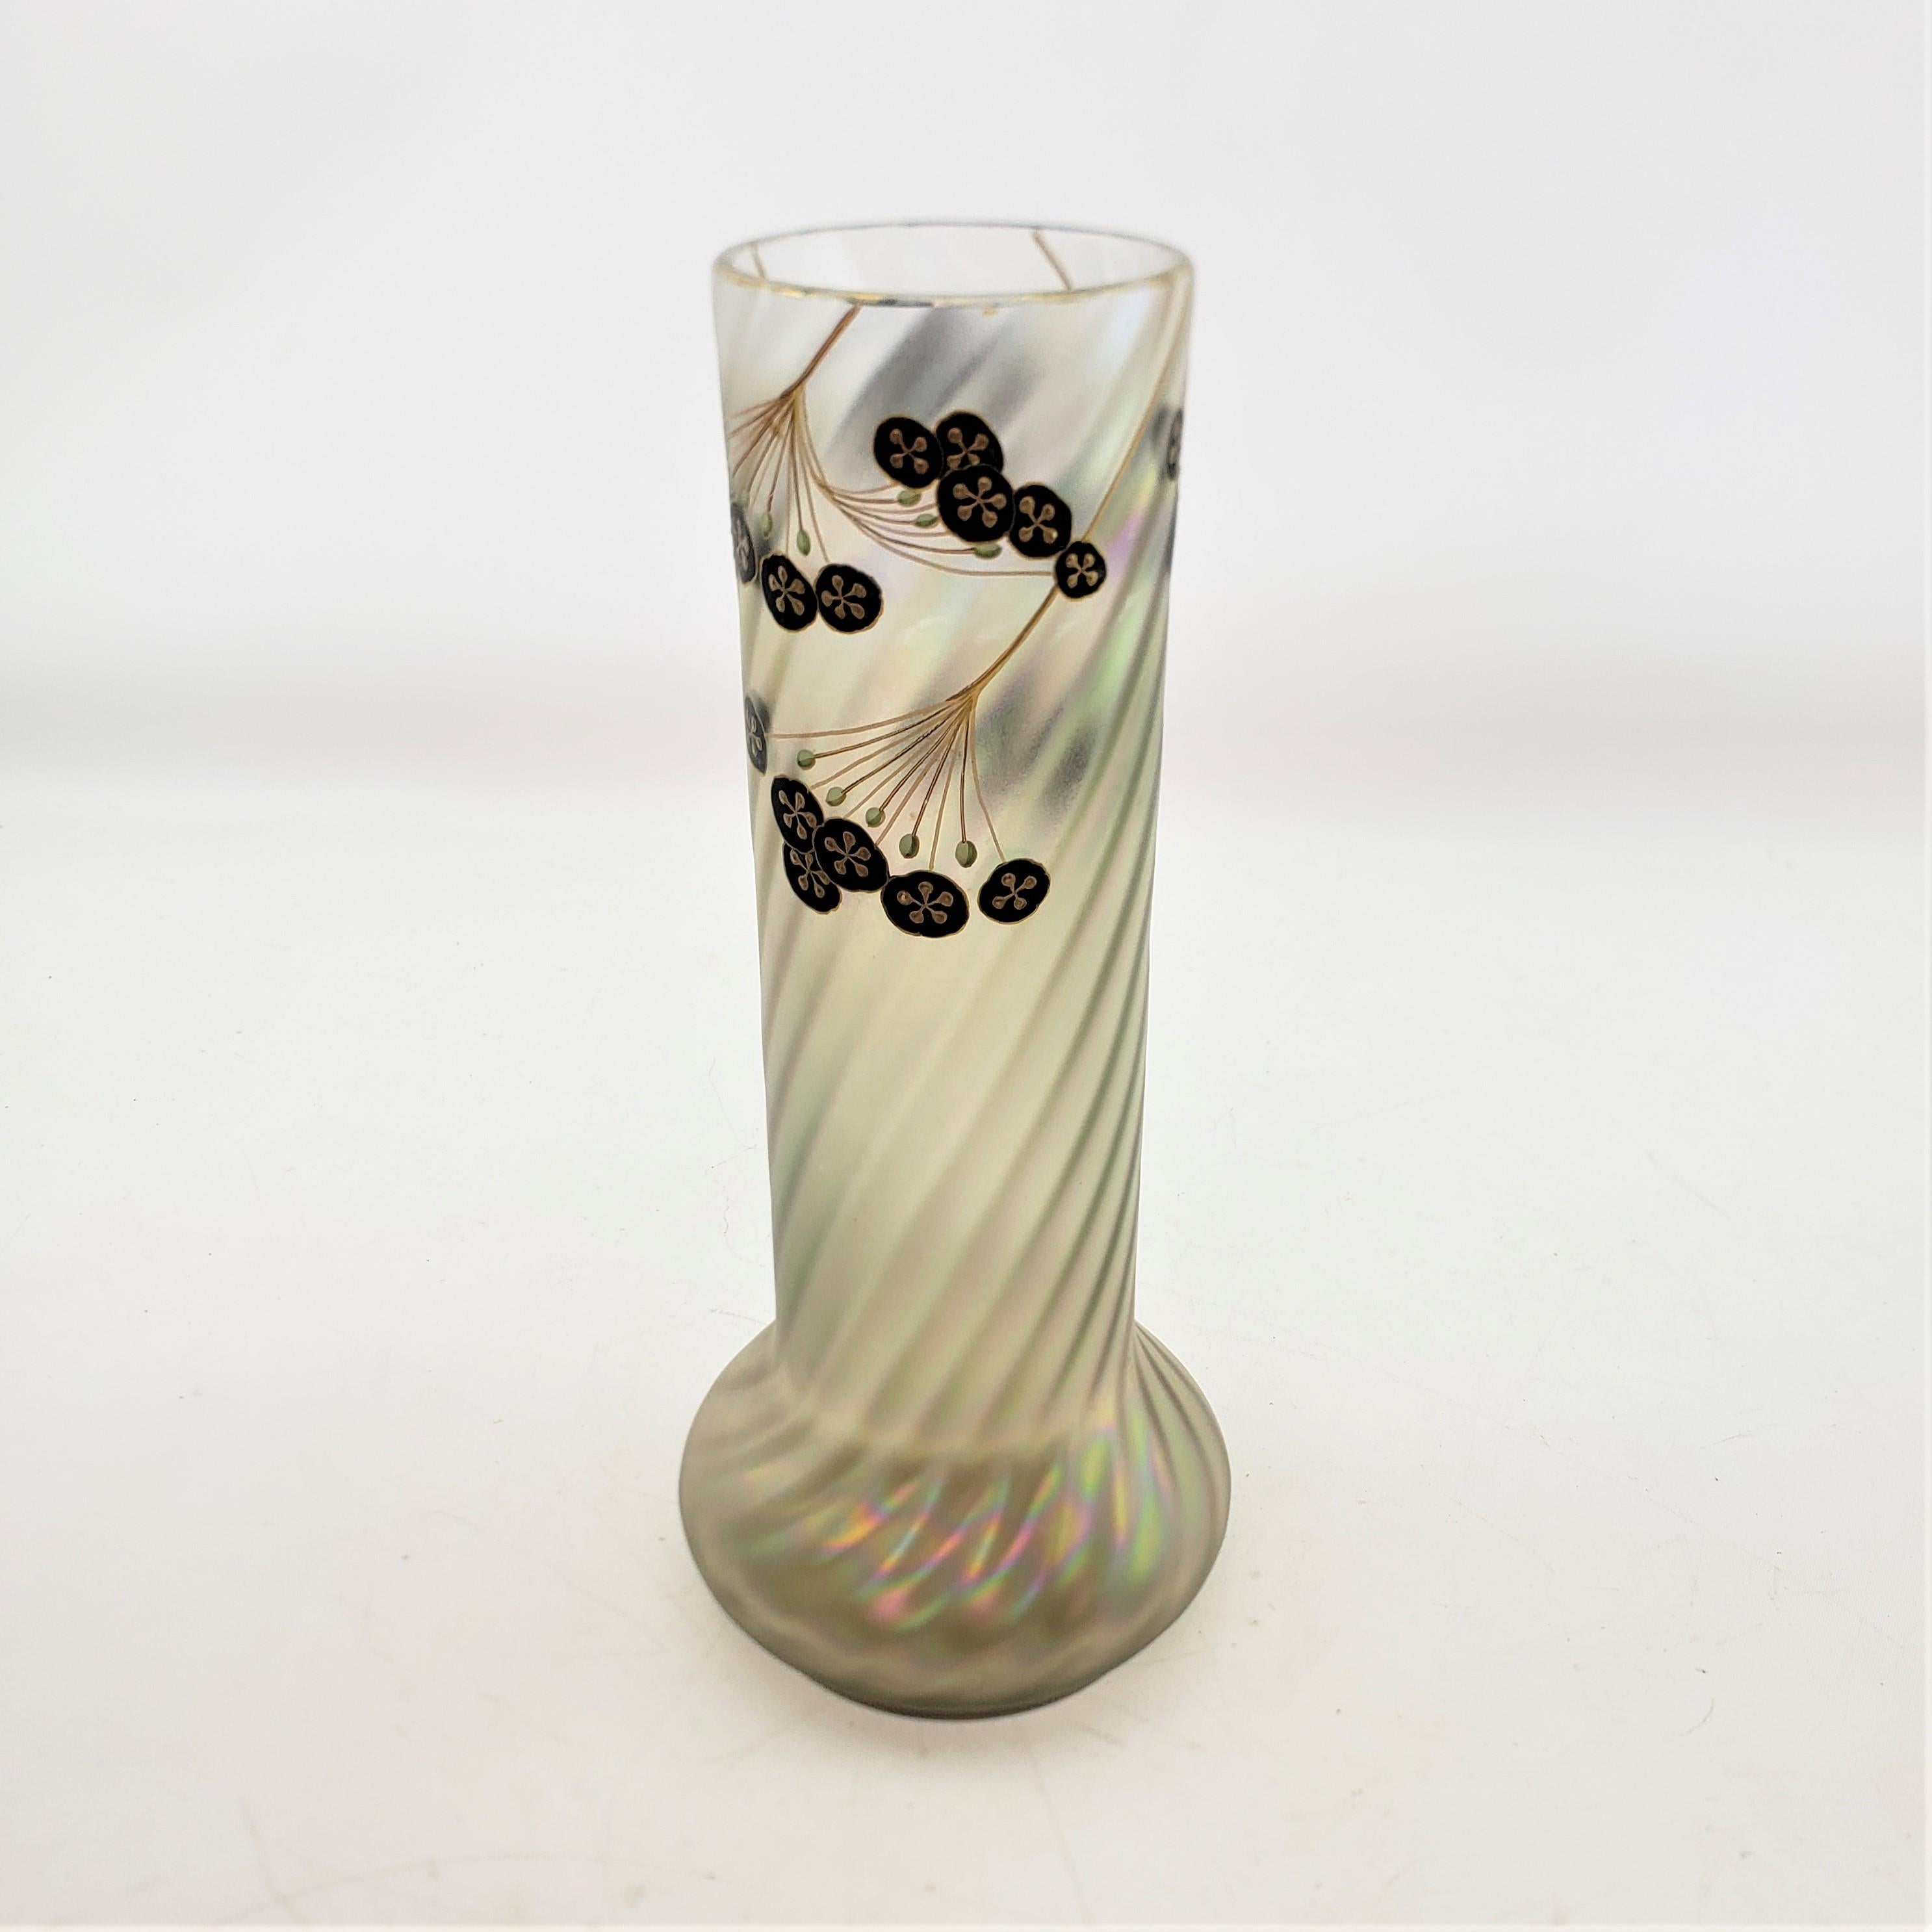 Antique Art Nouveau Iridescent Art Glass Vase with Enamel Floral Decoration For Sale 1